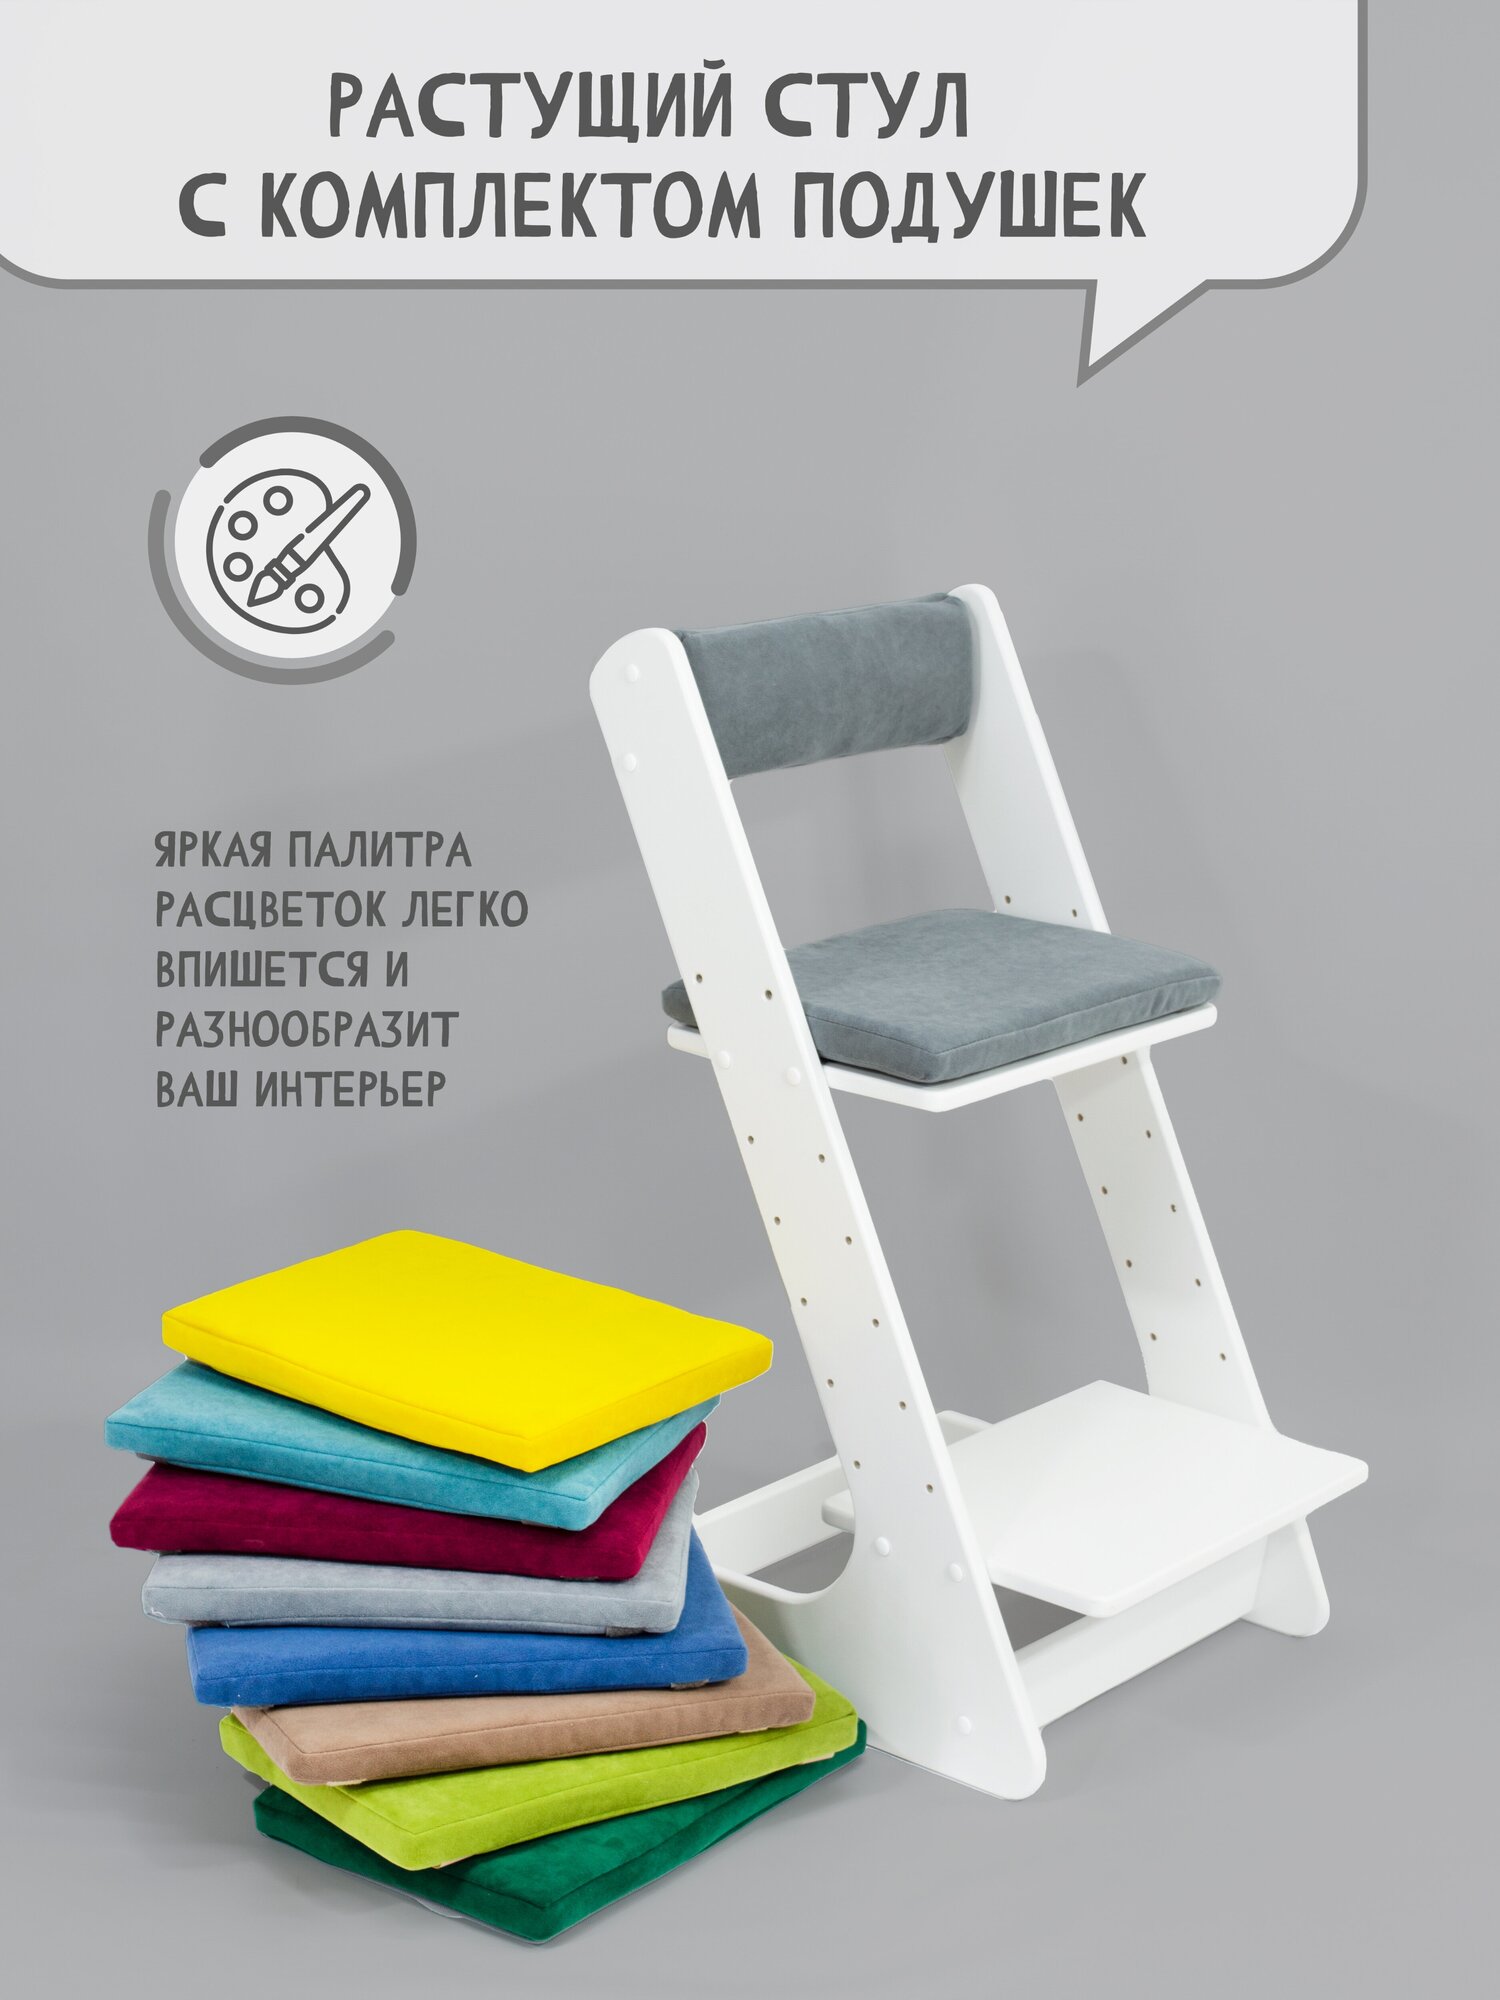 Растущий стул для детей школьника с подушкой на стул со спинкой, цвет серый